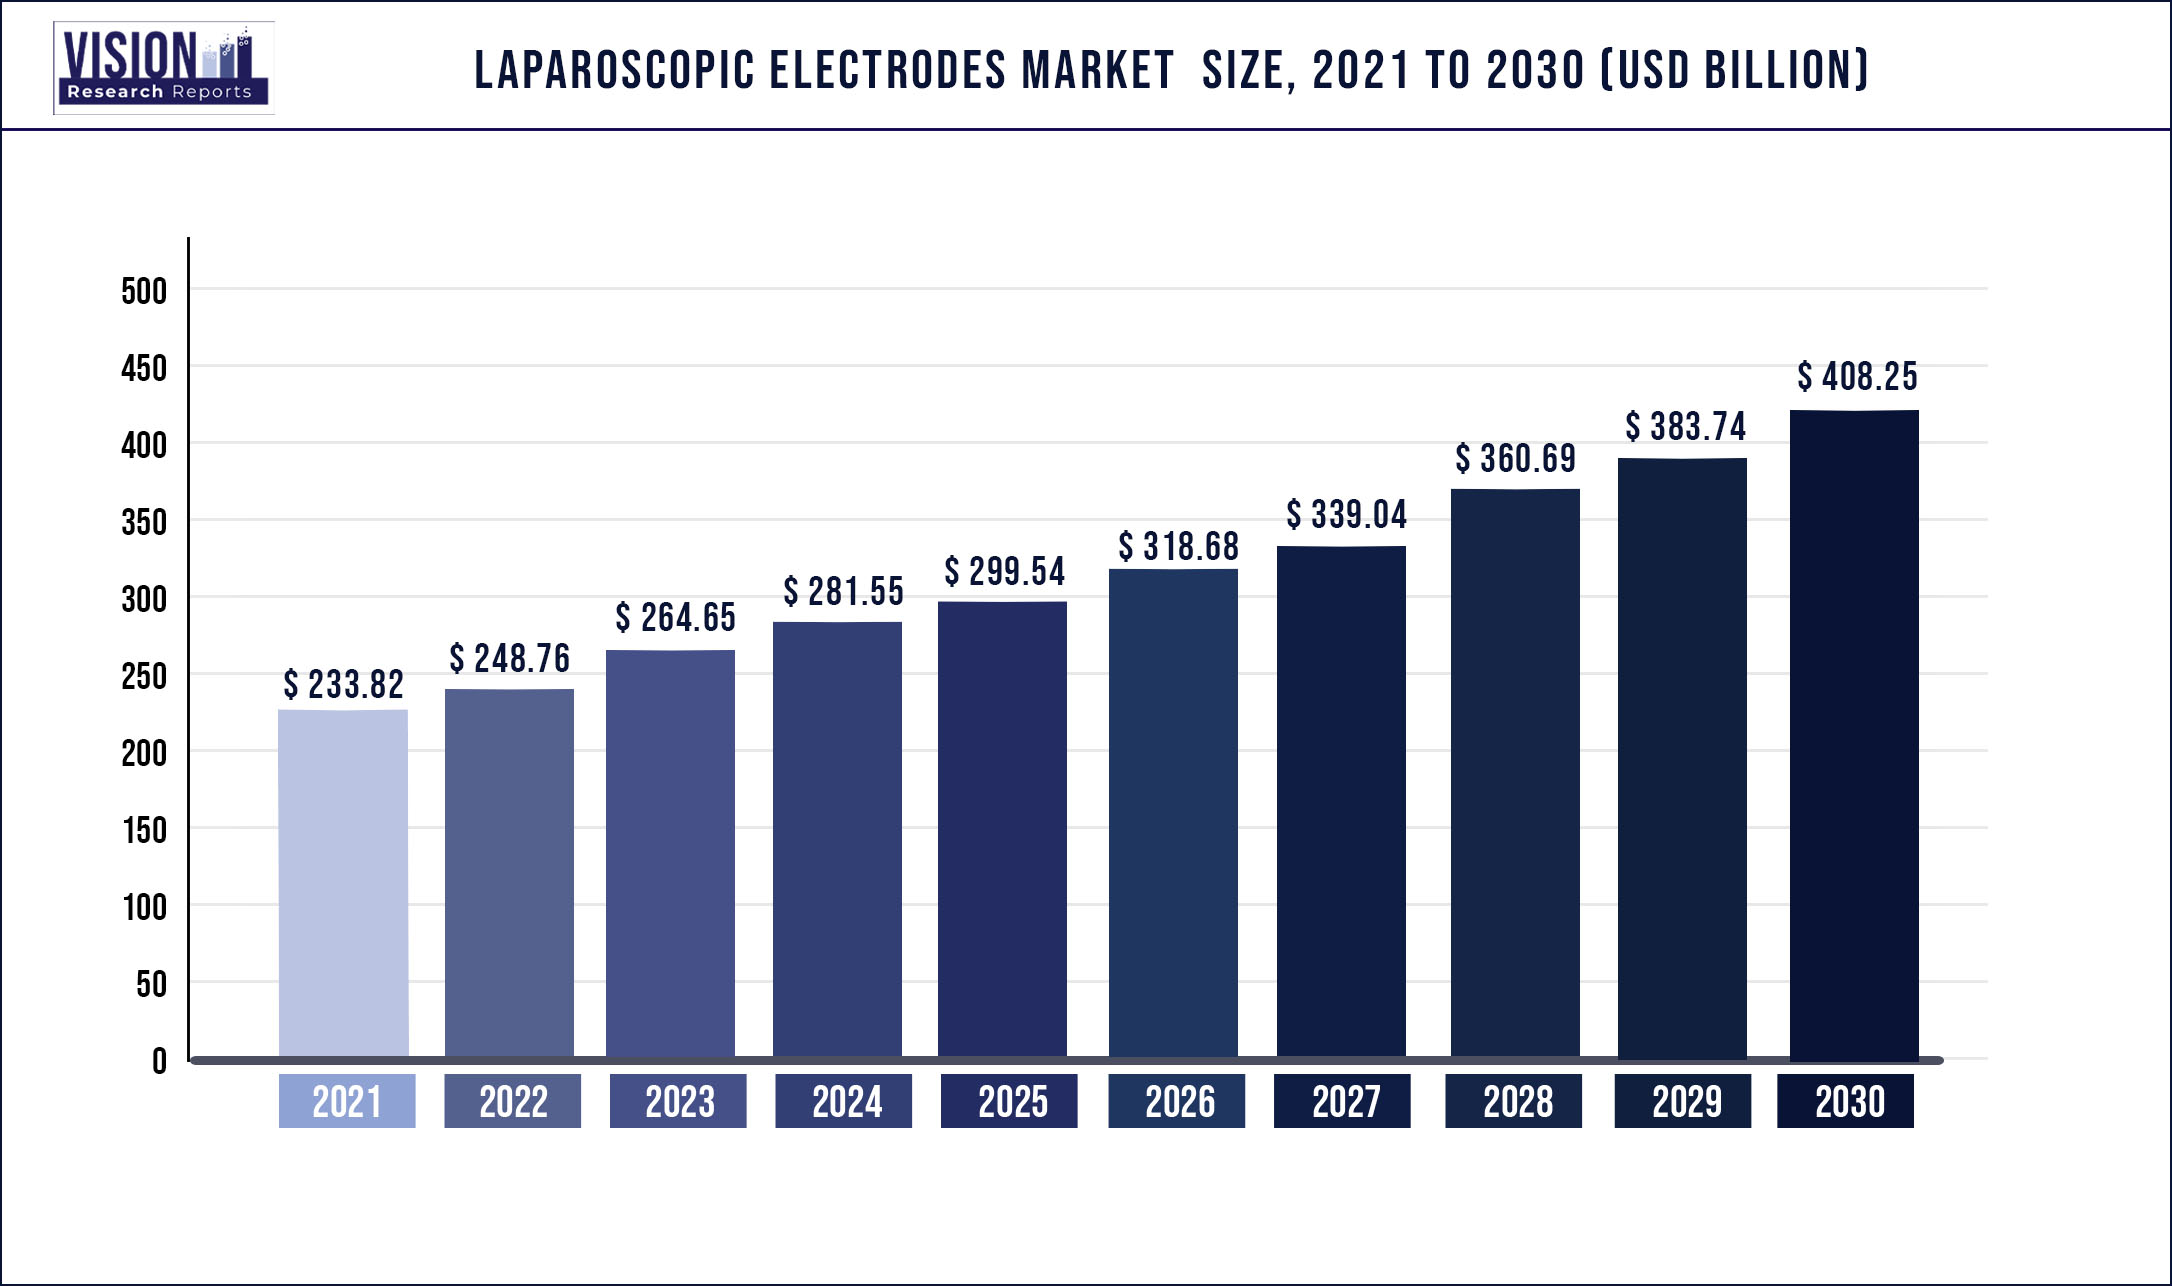 Laparoscopic Electrodes Market Size 2021 to 2030